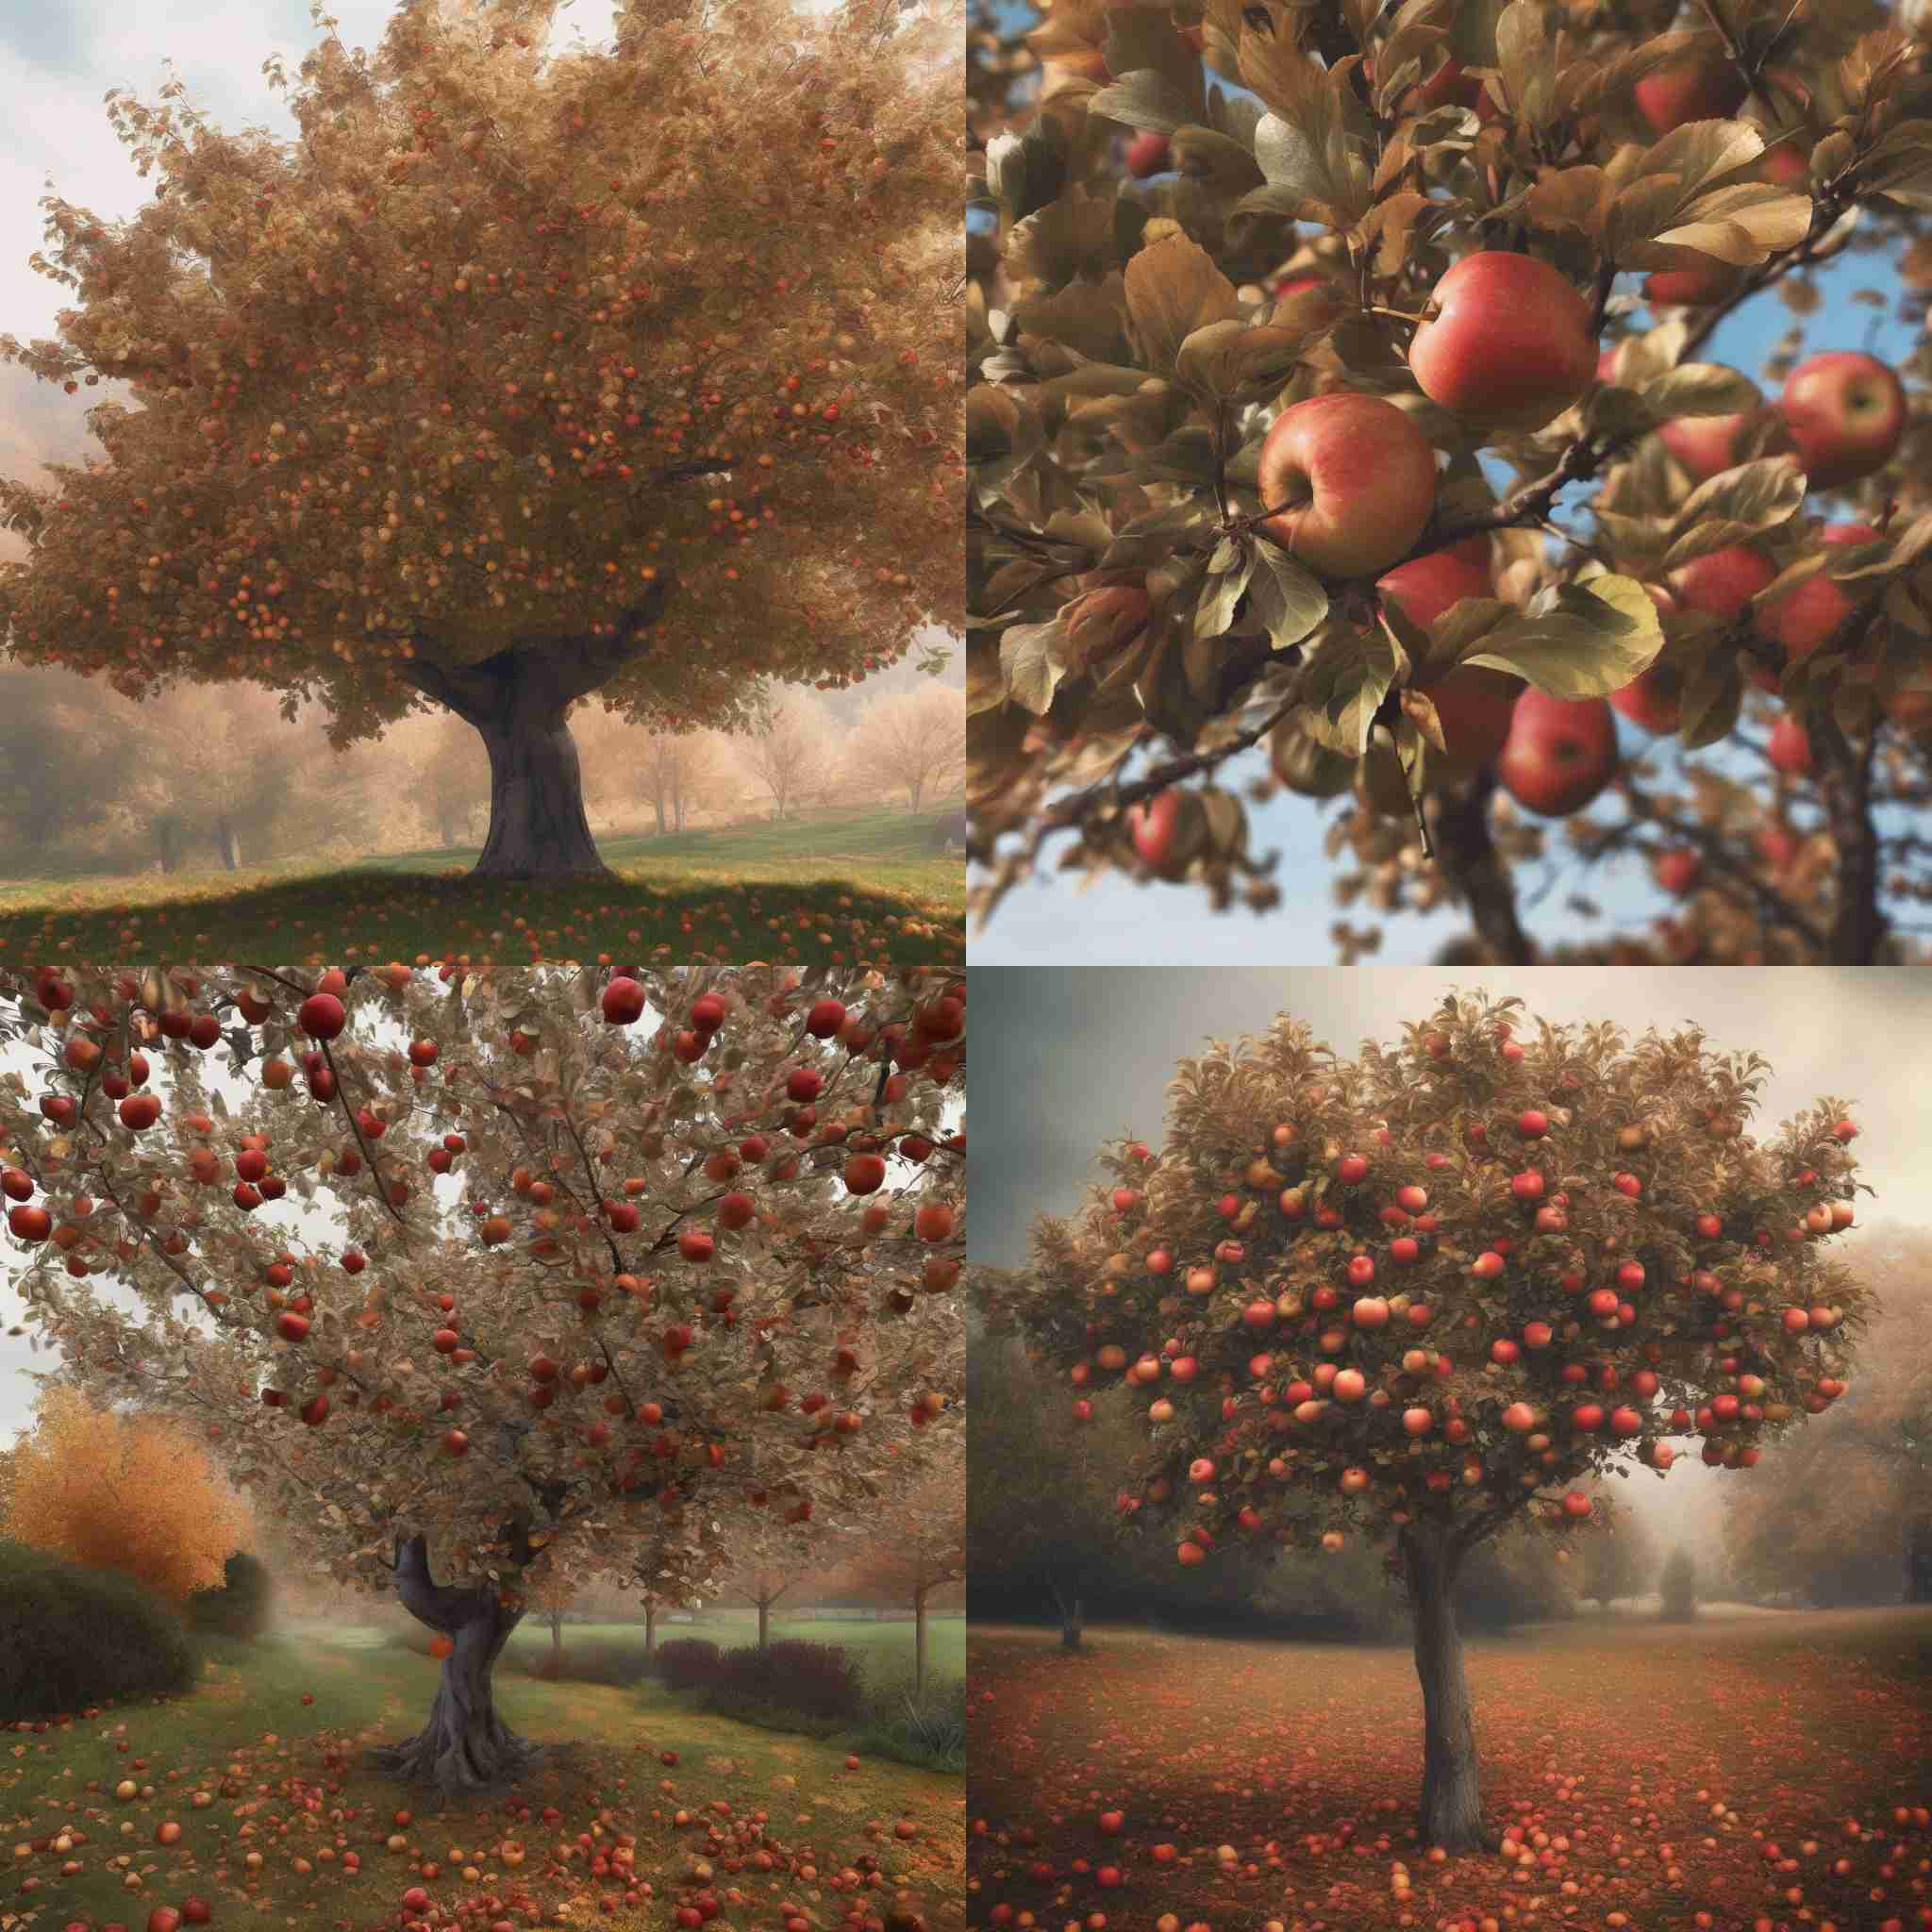 An apple tree in autumn